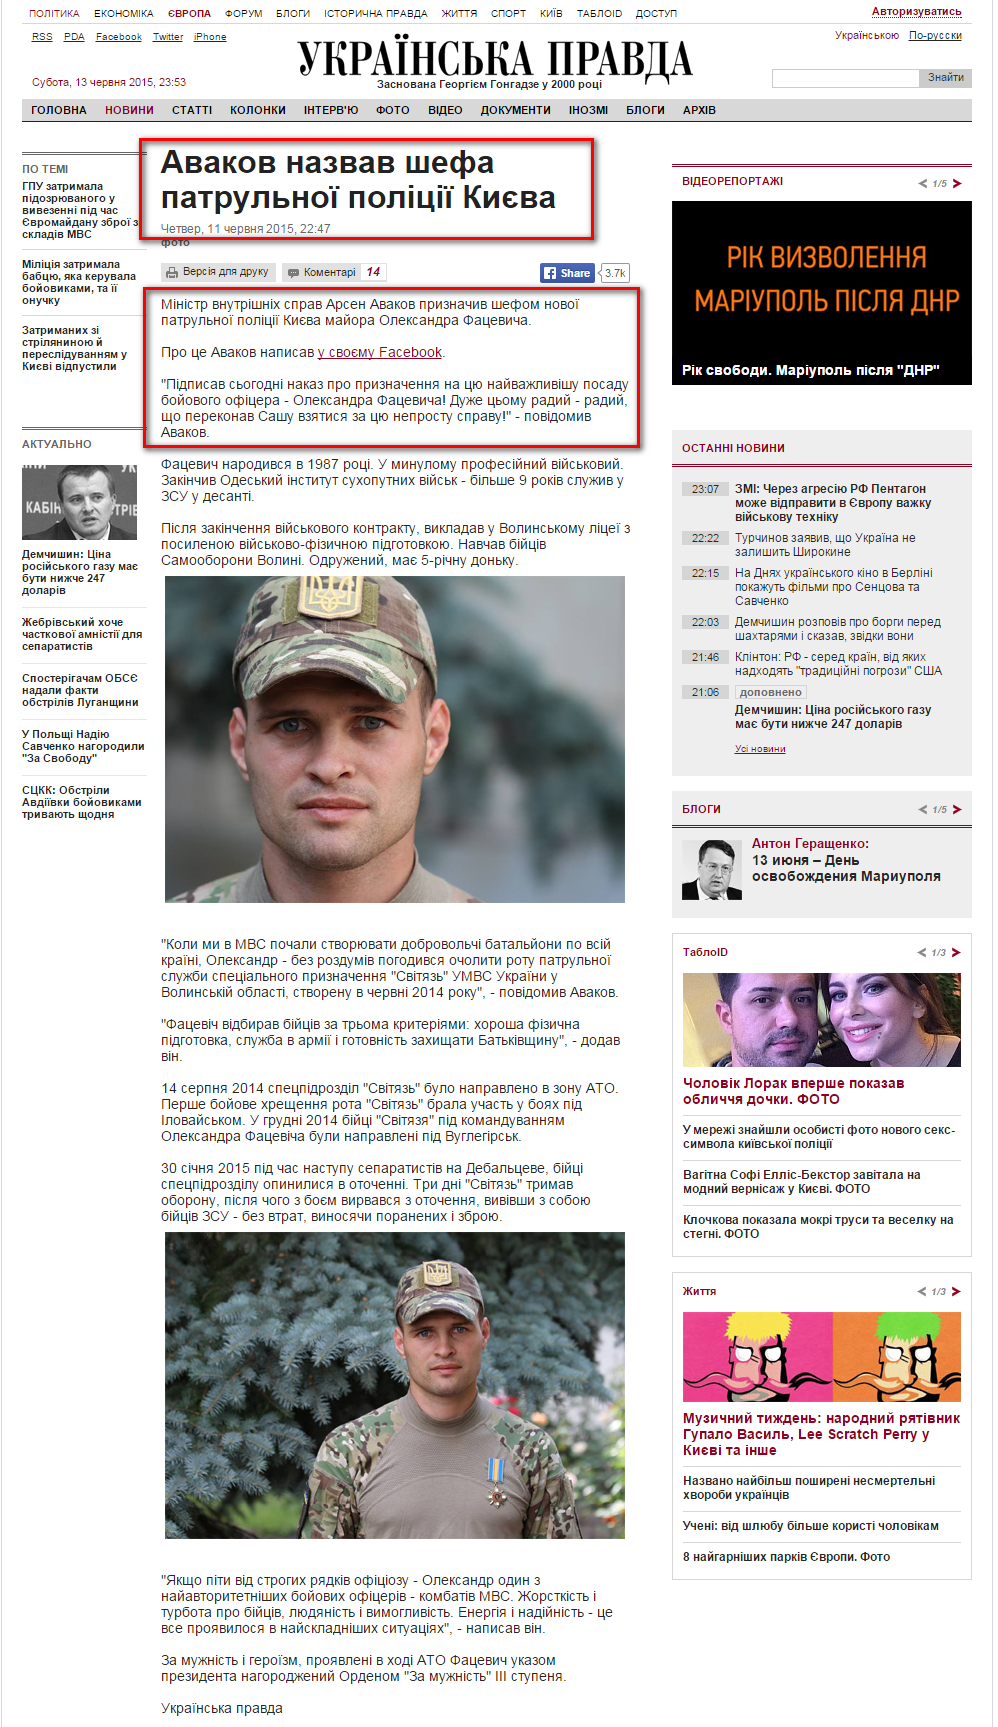 http://www.pravda.com.ua/news/2015/06/11/7070990/